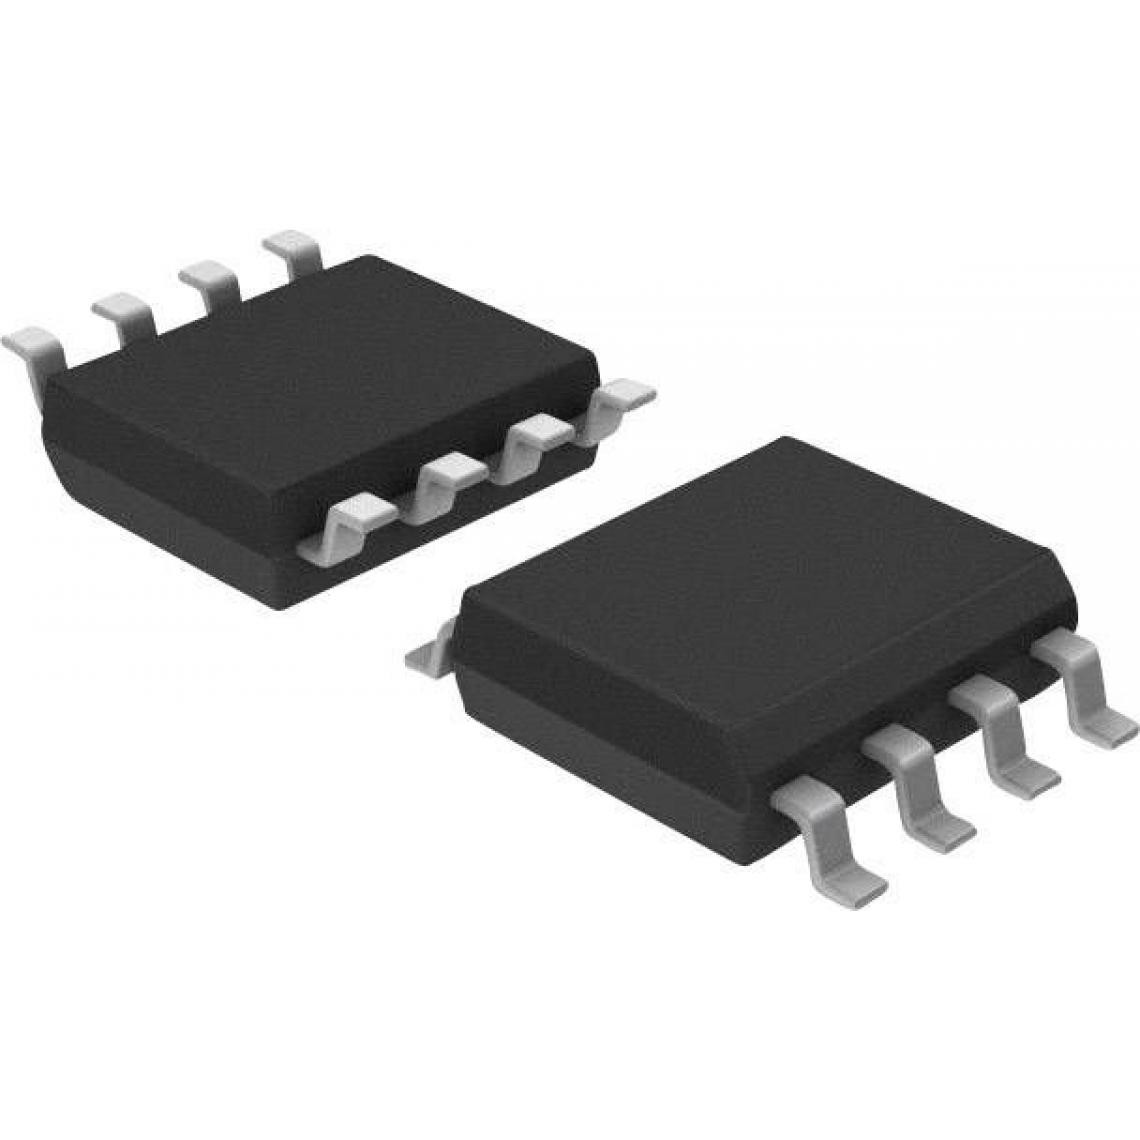 Inconnu - Microcontrôleur embarqué Microchip Technology ATTINY13-20SU SOIC-8 8-Bit 20 MHz Nombre I/O 6 1 pc(s) - Accessoires et Pièces Détachées